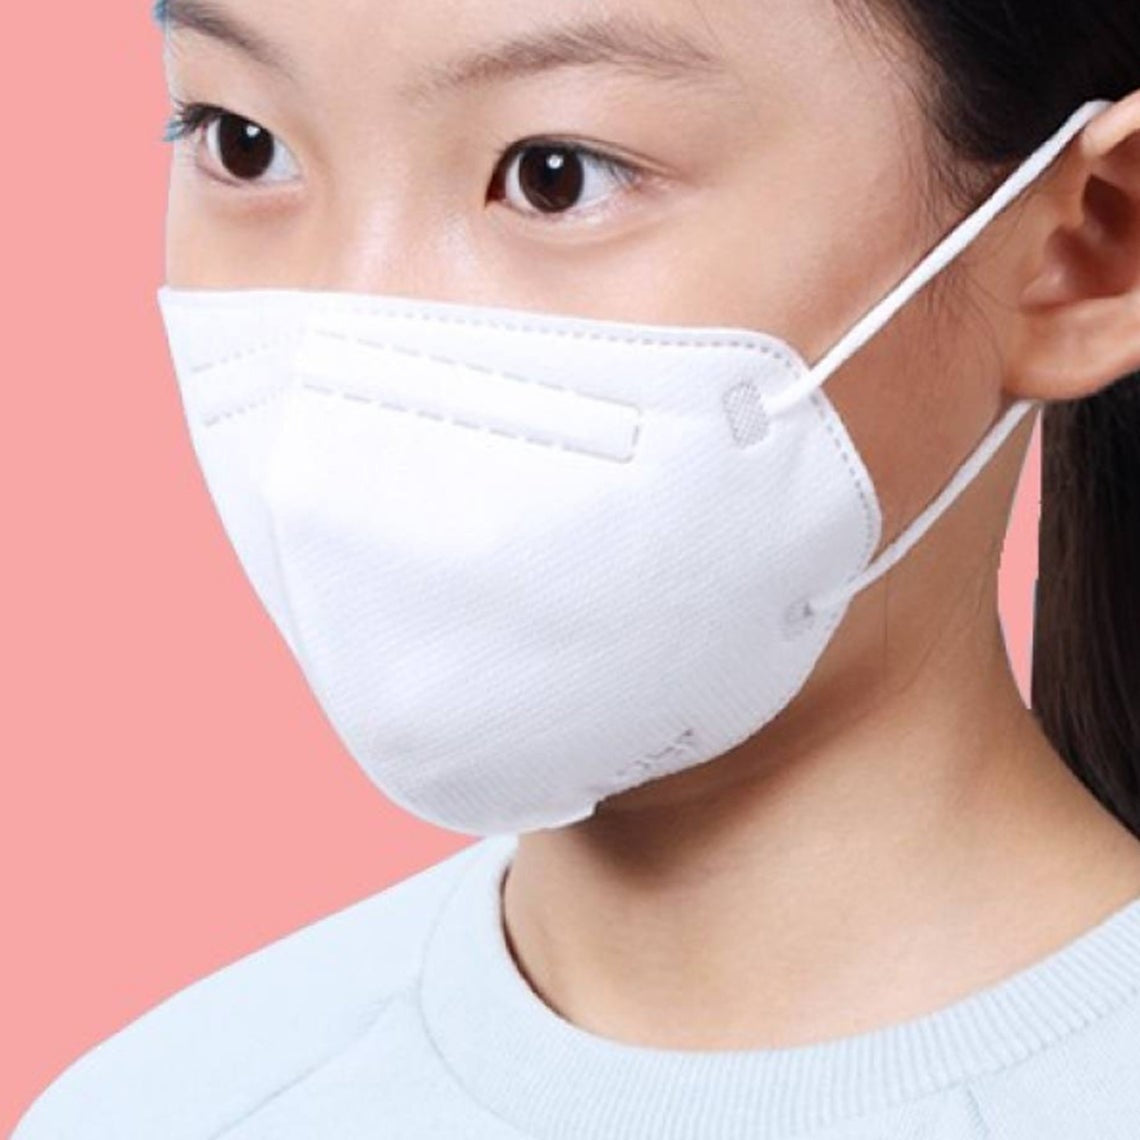 Air Queen Nanofiber Filter Face Masks